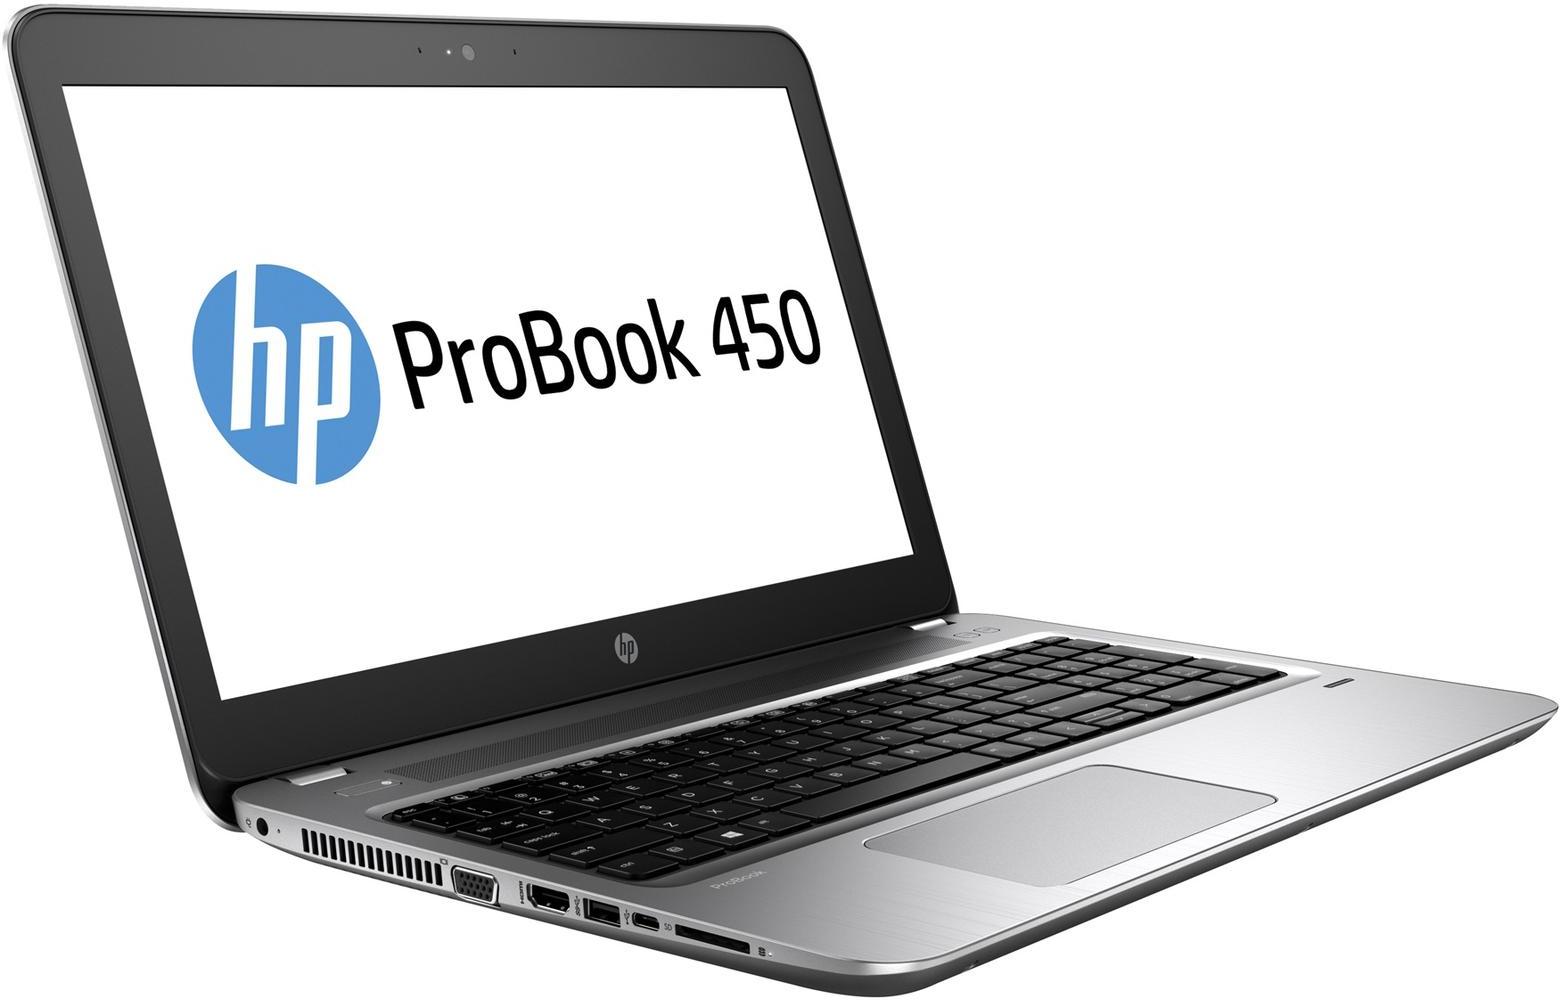   HP Probook 450 G4 (Y7Z92EA)  1